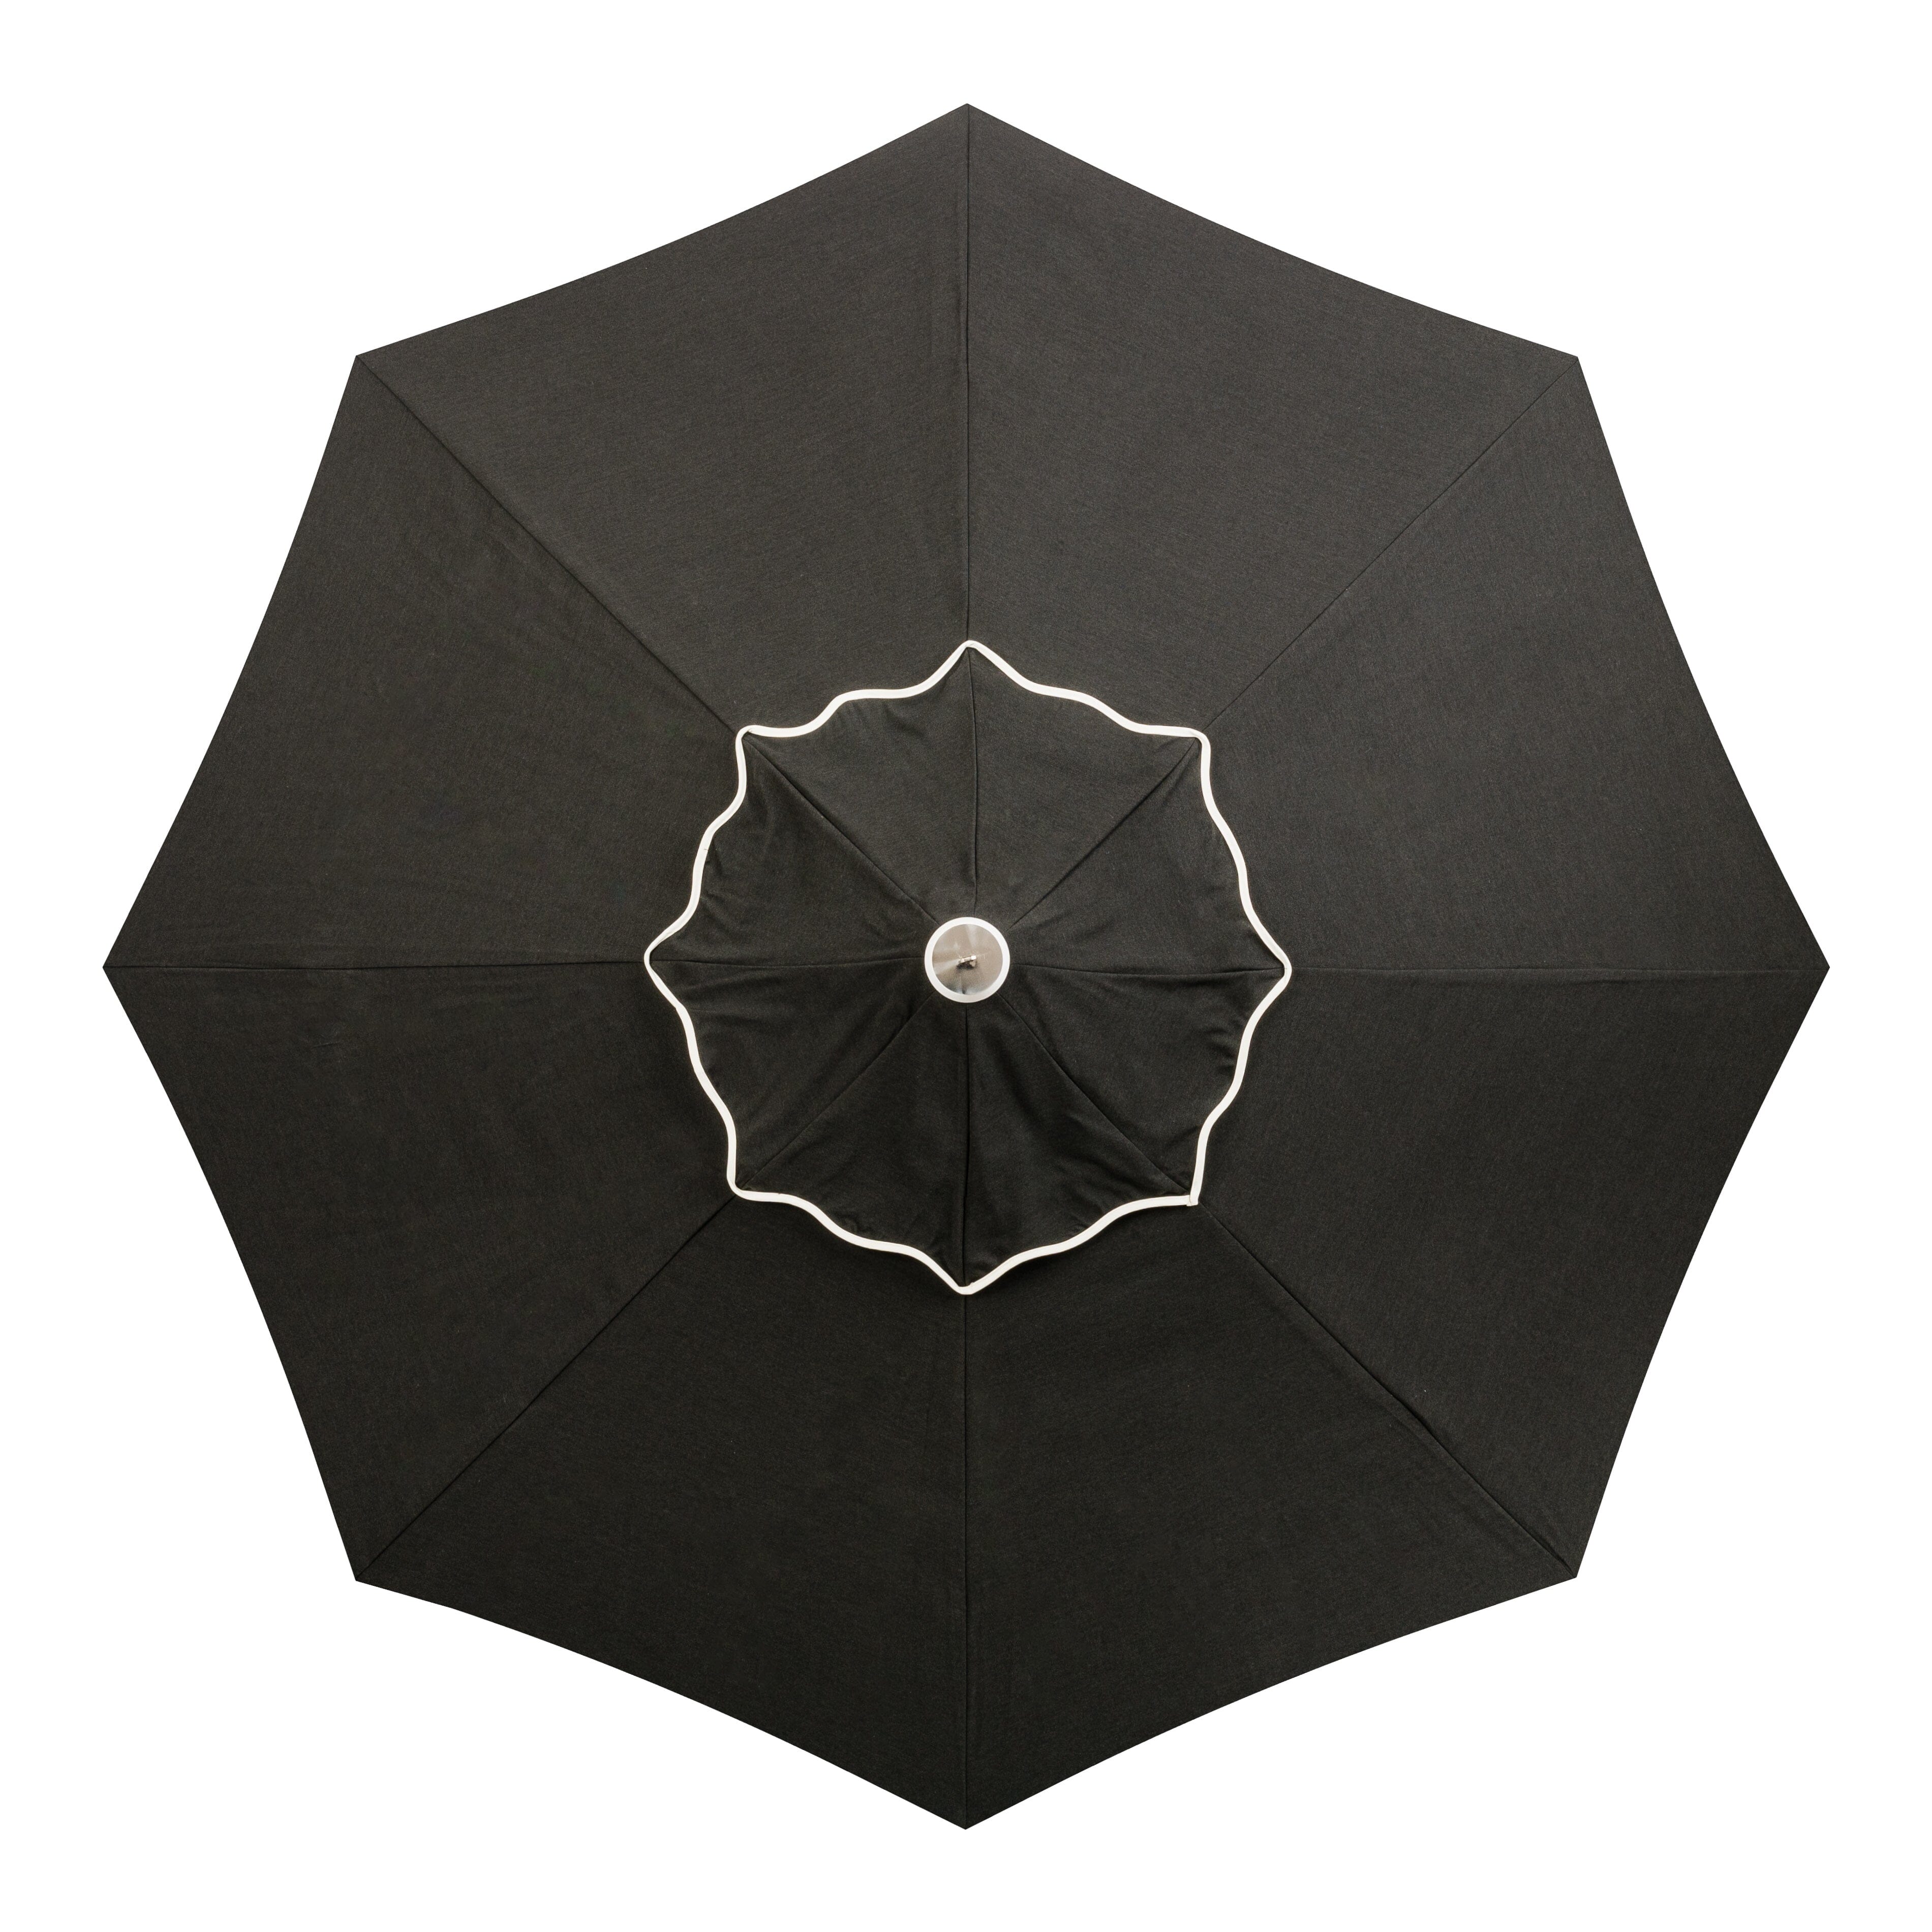 The Market Umbrella - Rivie Black Market Umbrella Business & Pleasure Co Aus 